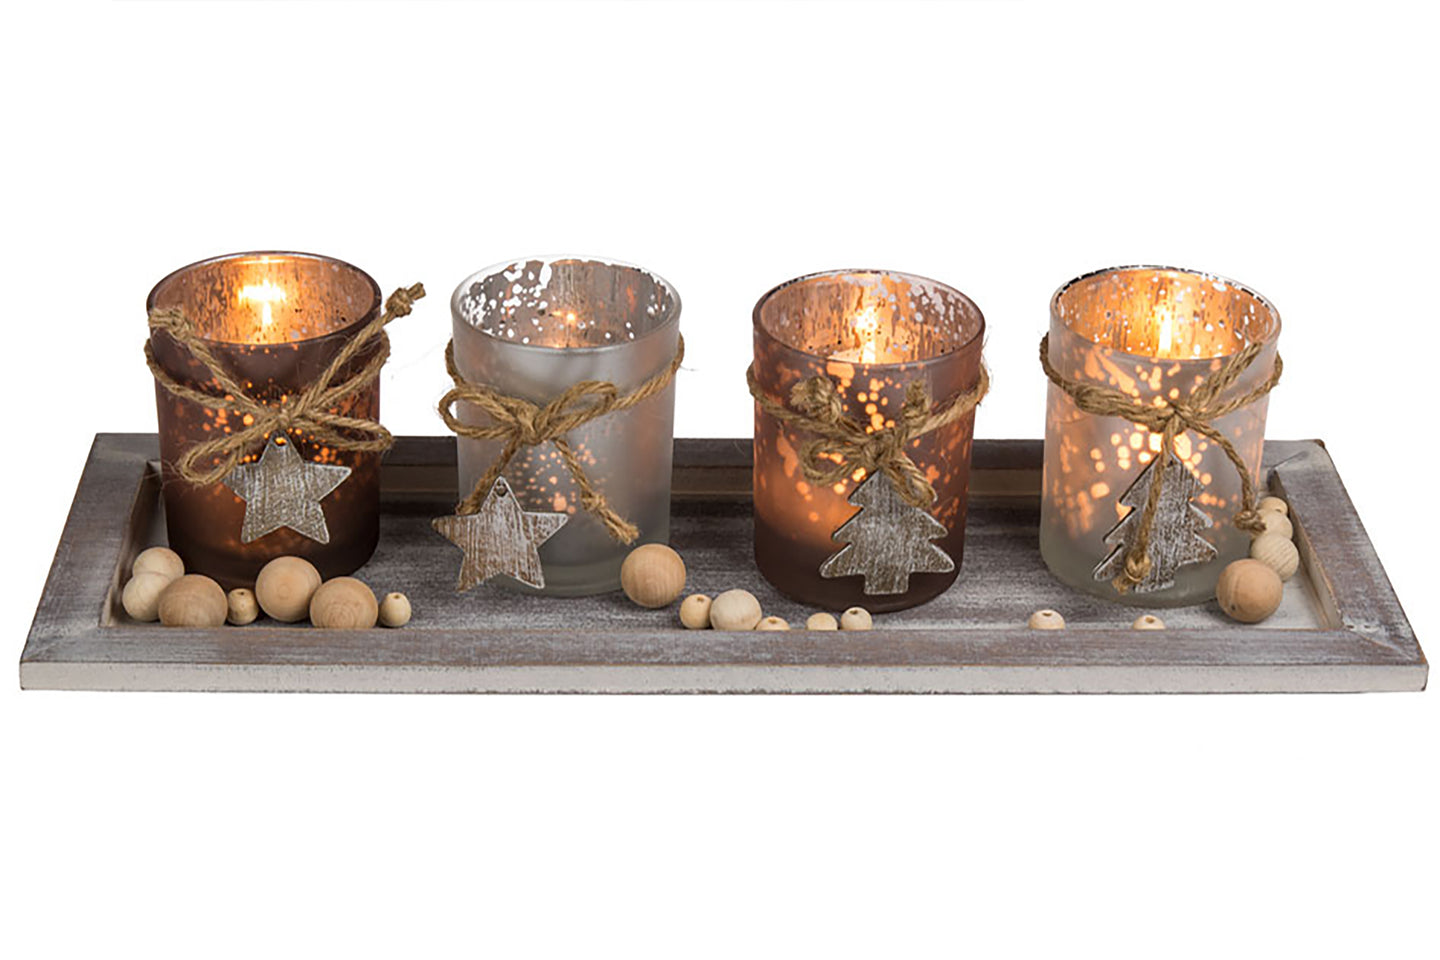 XL Holzteller mit LED Kerzen und Dekoration - Set aus 4 Glas Kerzenhaltern und 4 LED Teelichtern Winter Advent Weihnachten